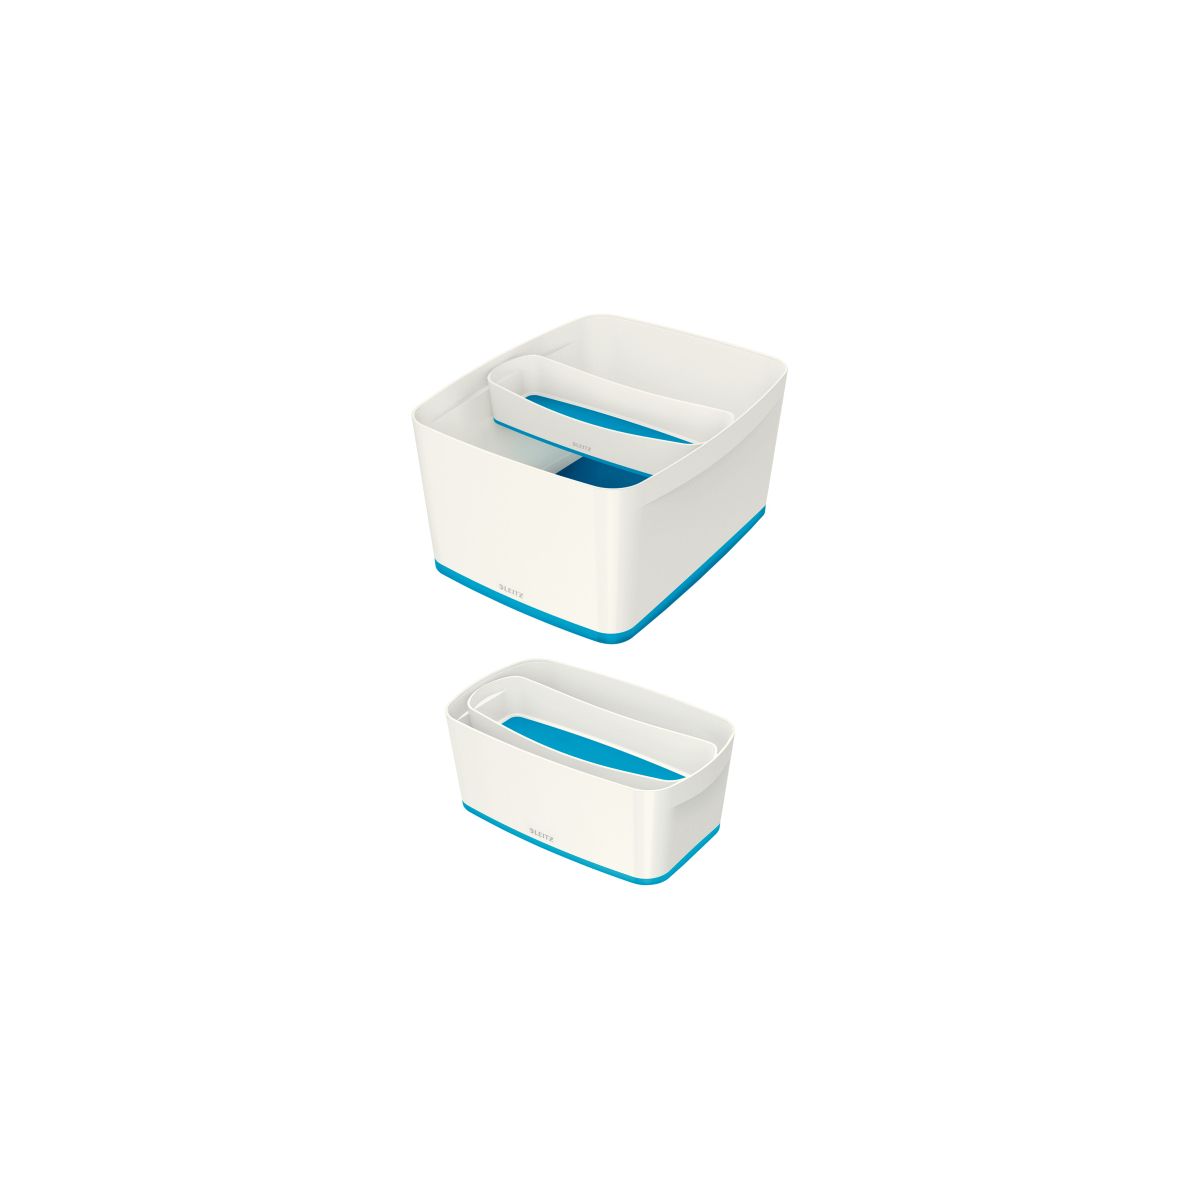 Przybornik na biurko my box organizer podłużny biało-niebieski Leitz (52581036)